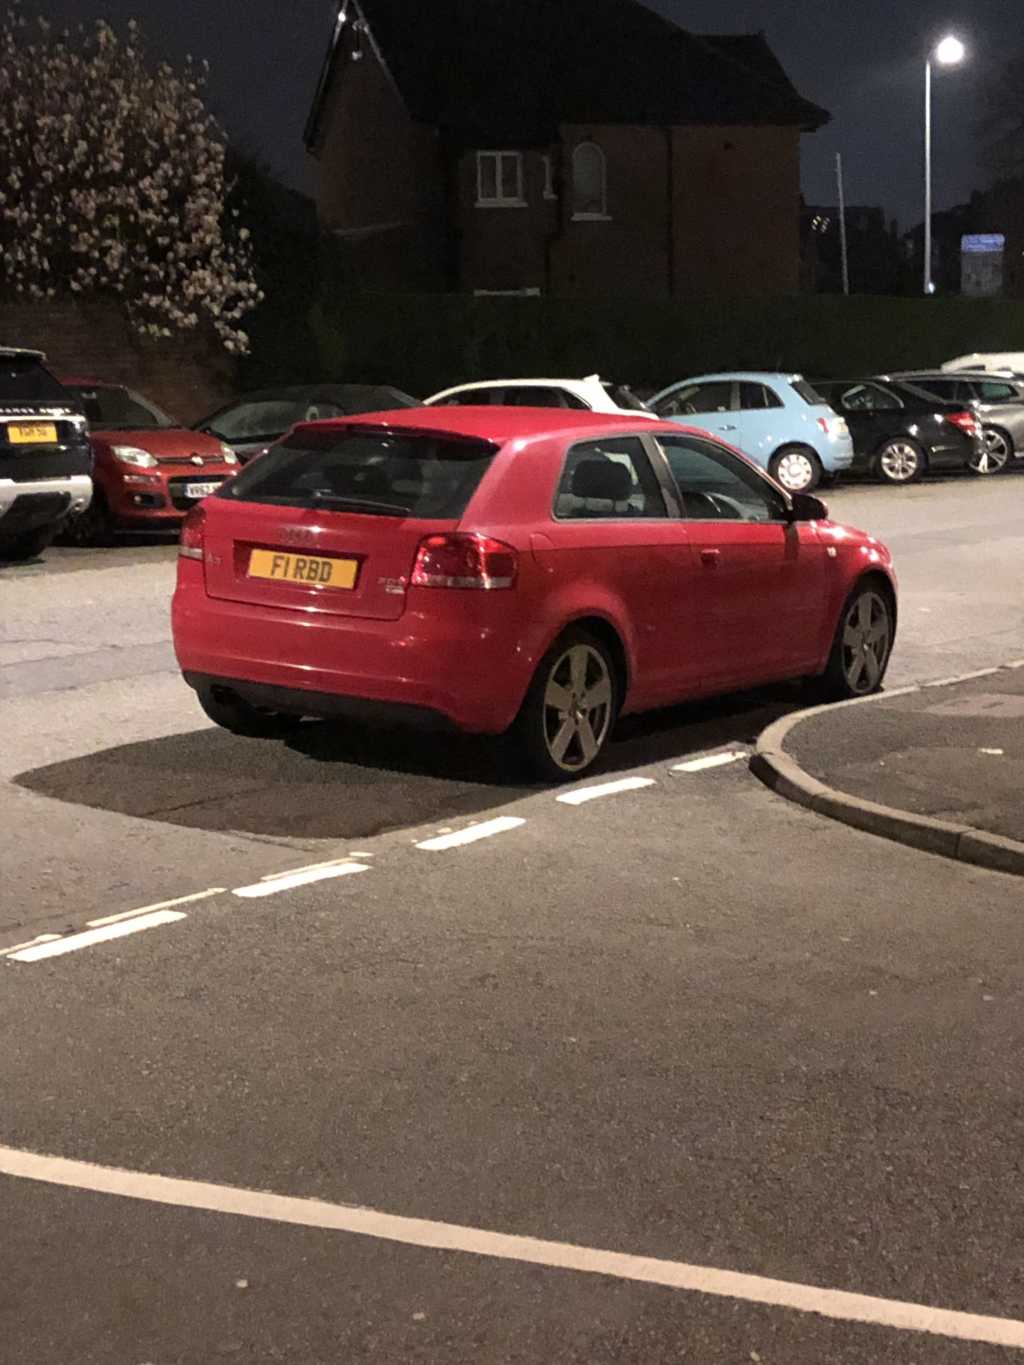 F1RBD displaying Selfish Parking